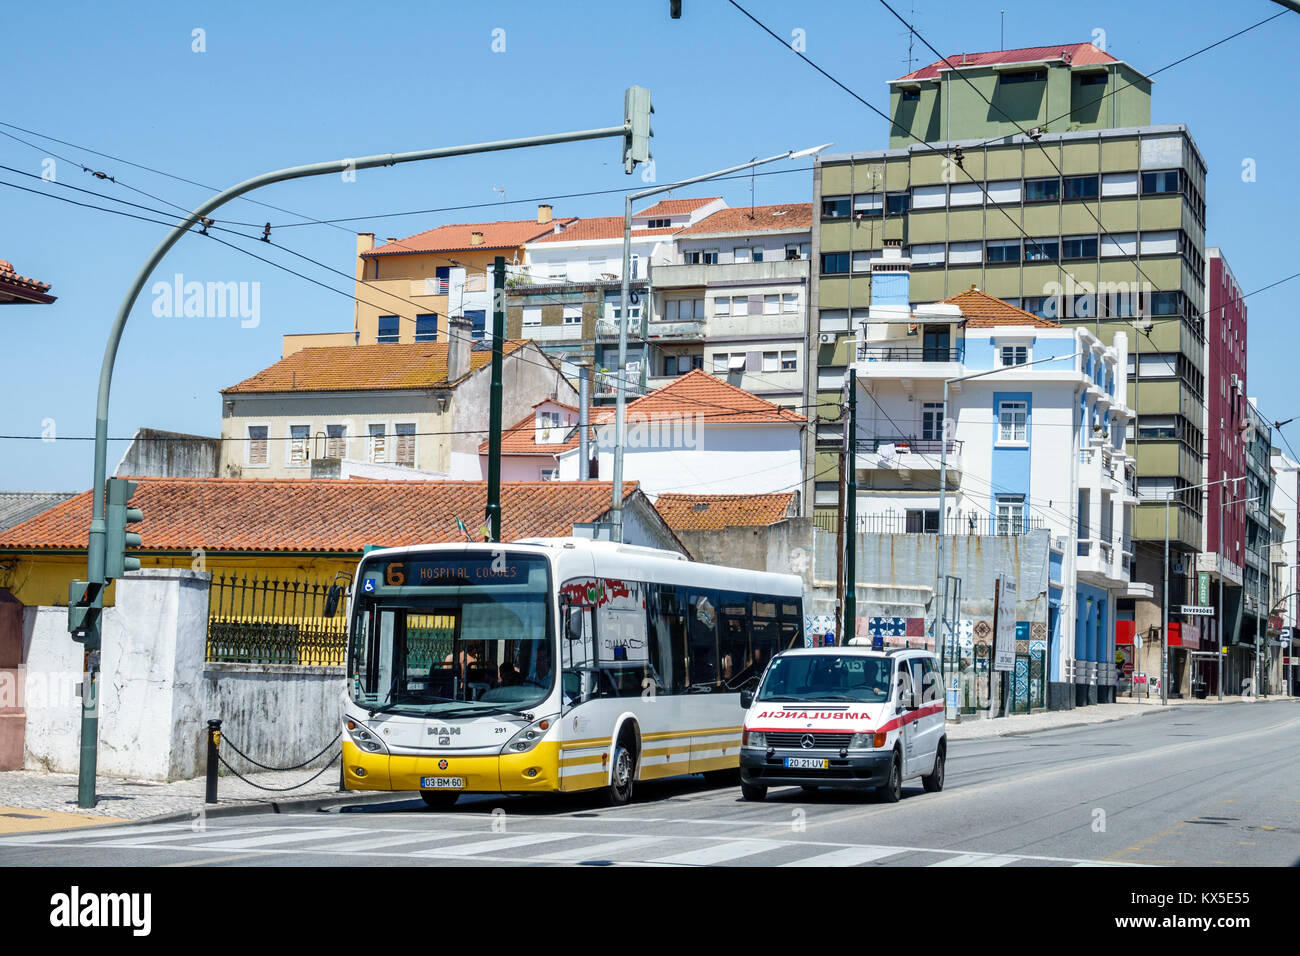 Coimbra Portugal,centro storico,Avenida Fernao de Magalhaes,incrocio,semaforo,autobus,ambulanza,fermata,edifici,strada,ispanico,immi immigranti Foto Stock